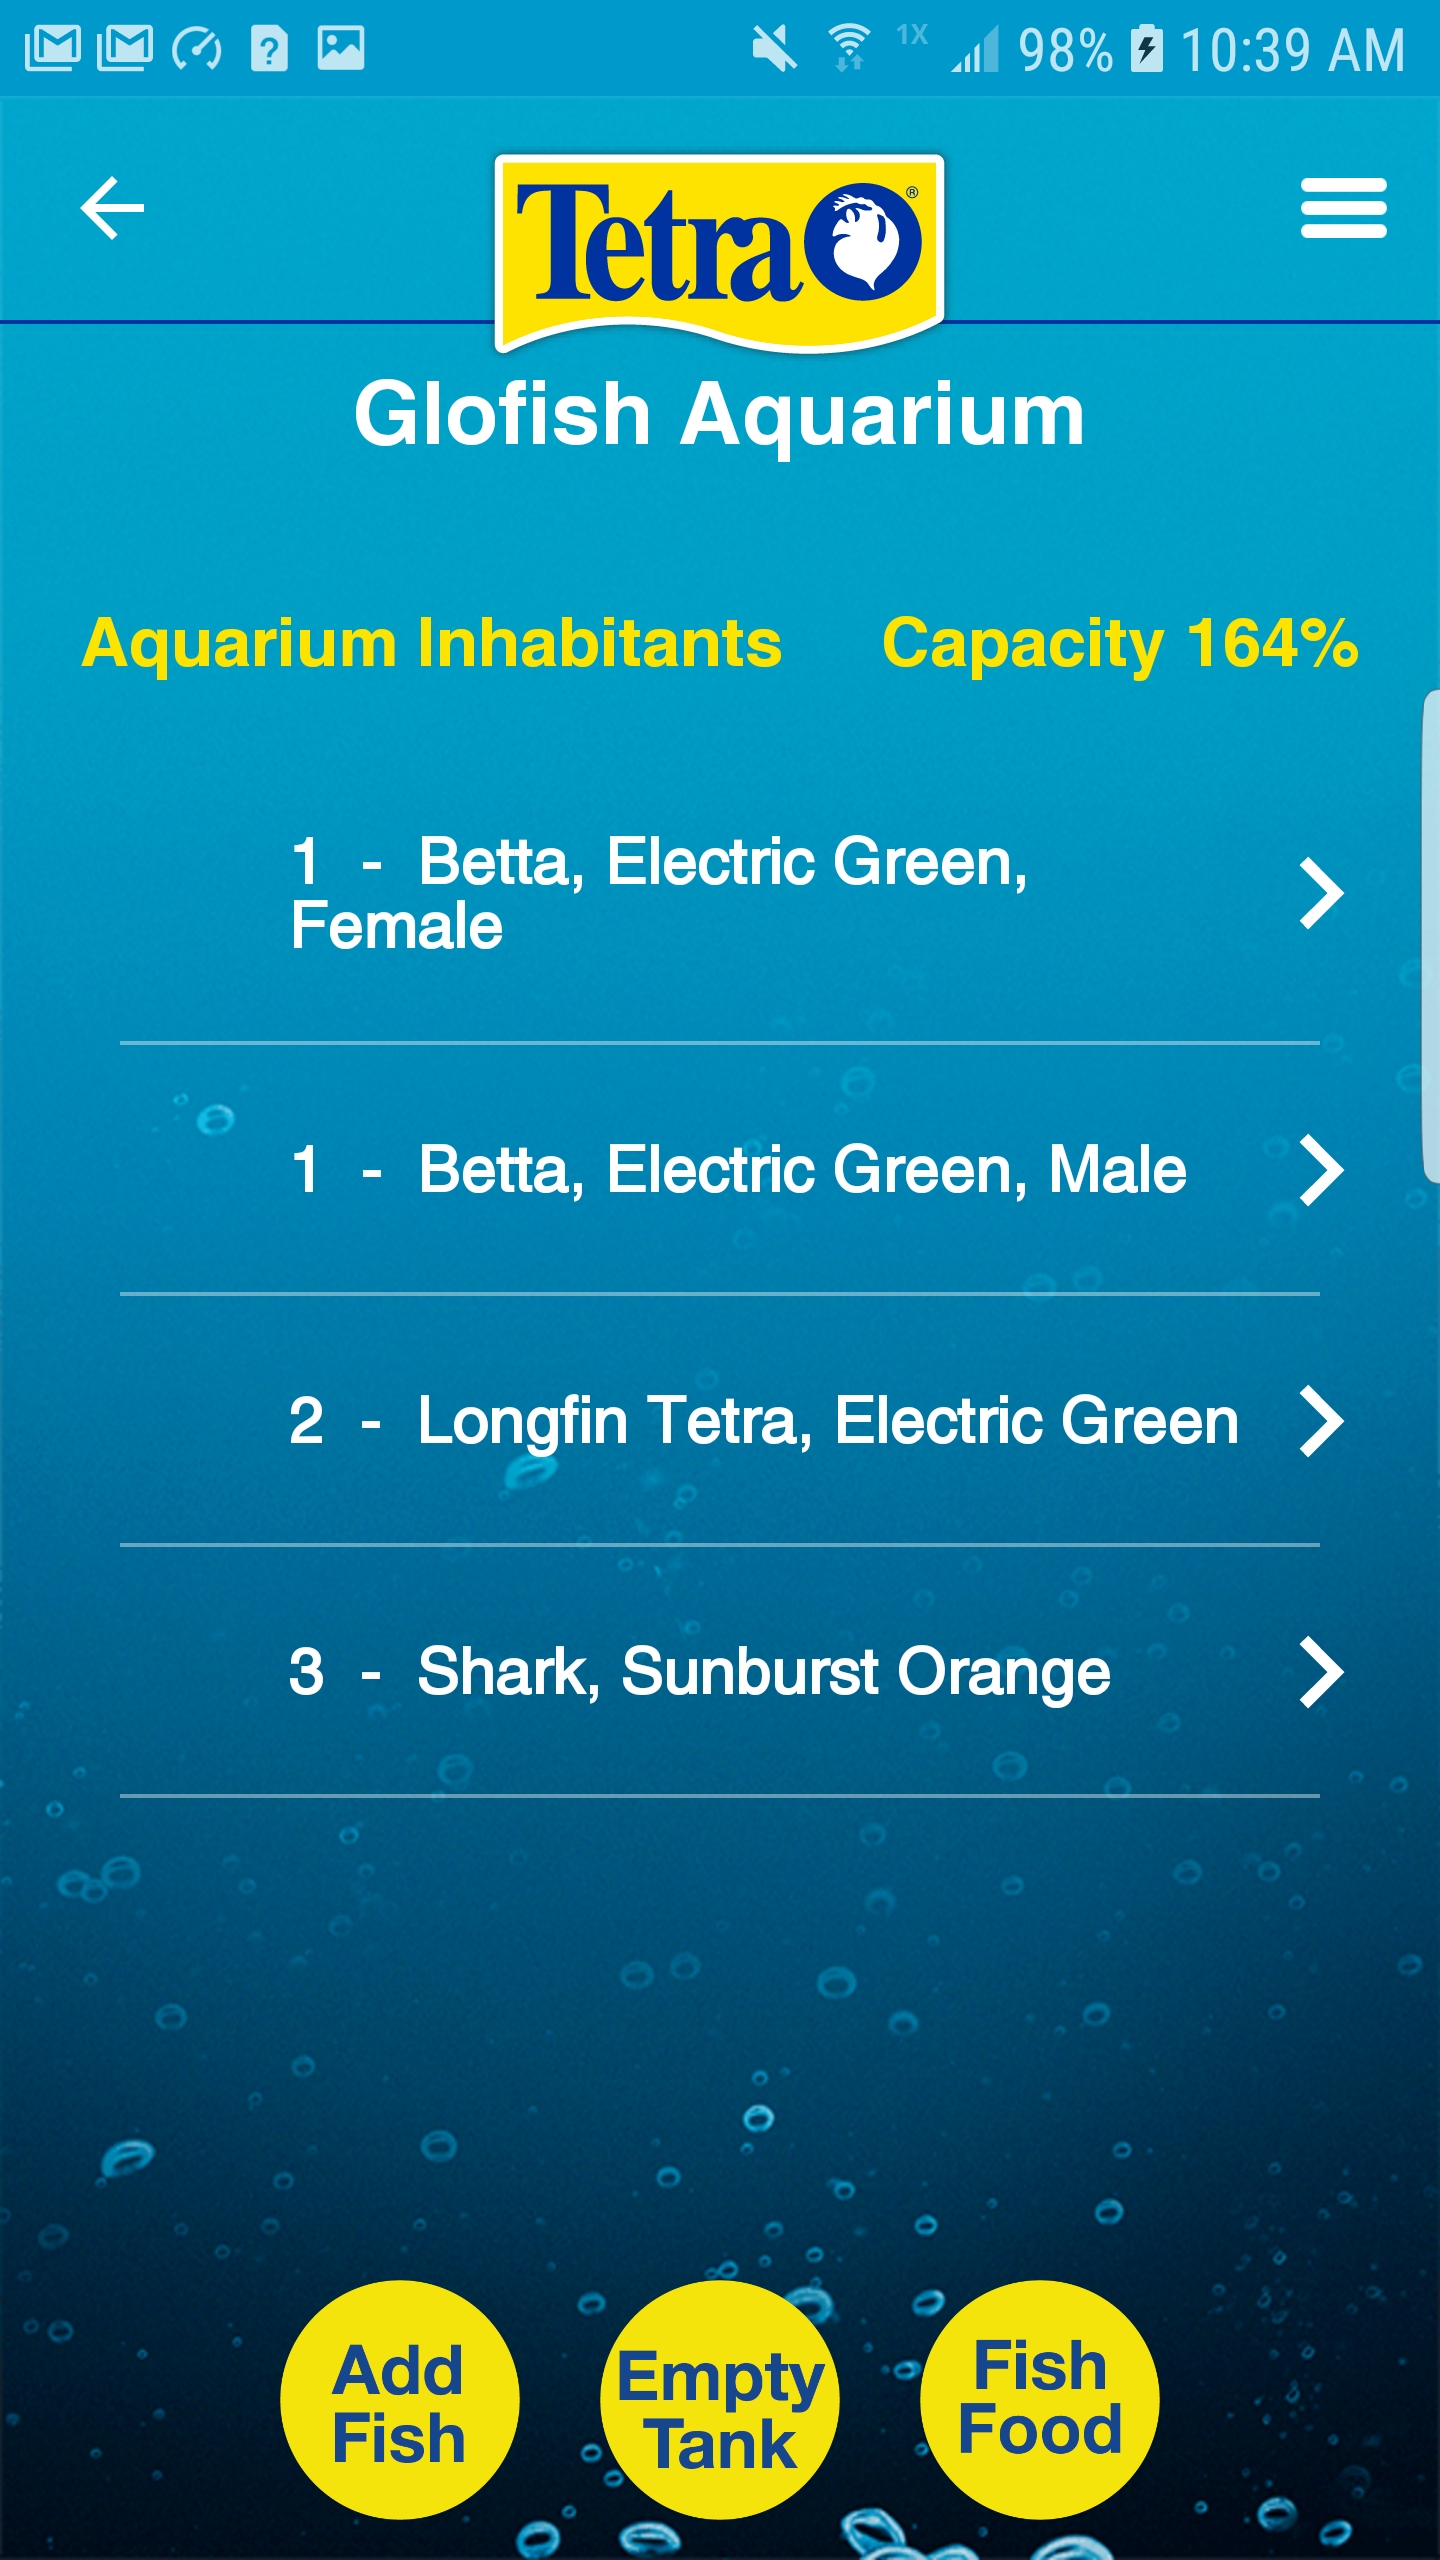 Spectrum Connected App Aquarium inhabitants and capacity